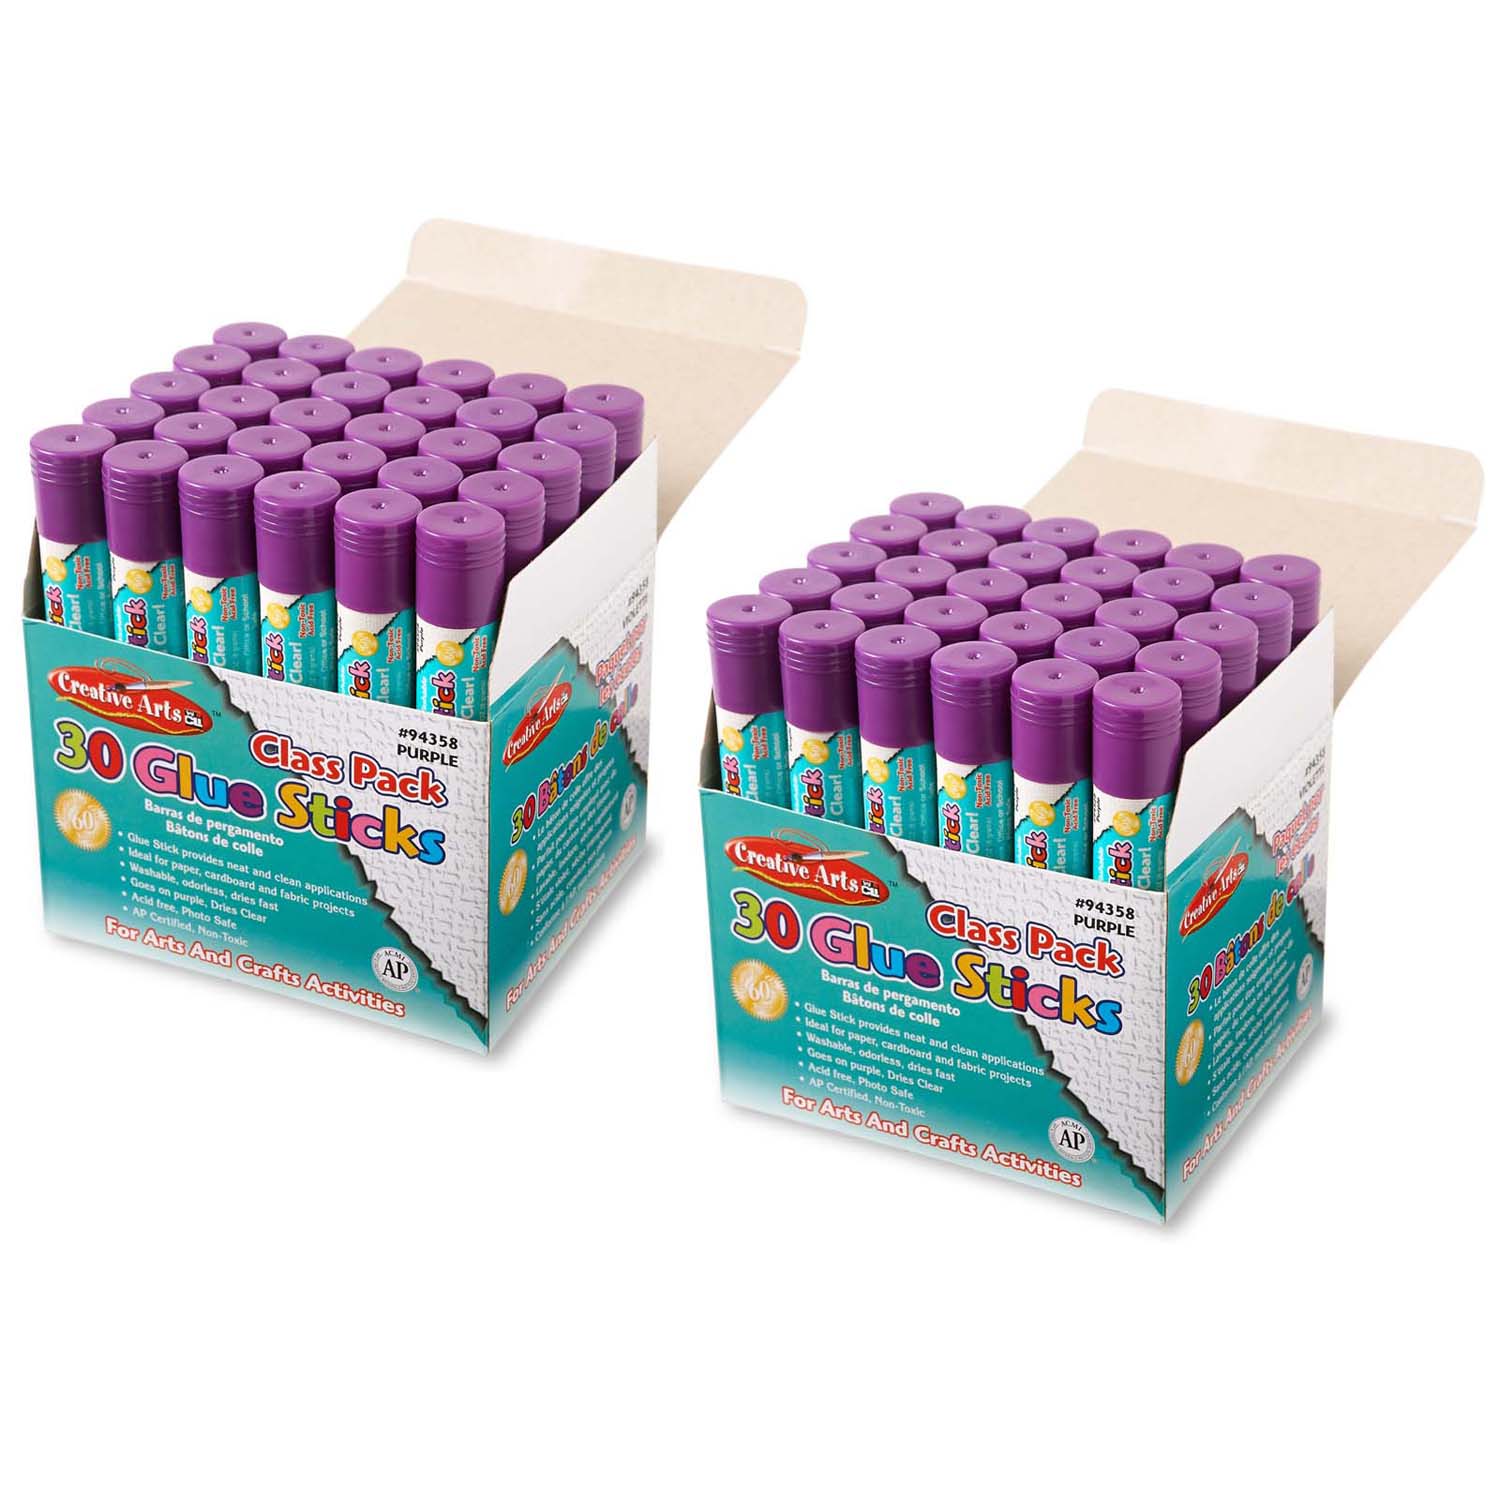 Creative Arts Economy Glue Stick Classpack, .28 oz., Purple, 30 Per Pack, 2 Packs